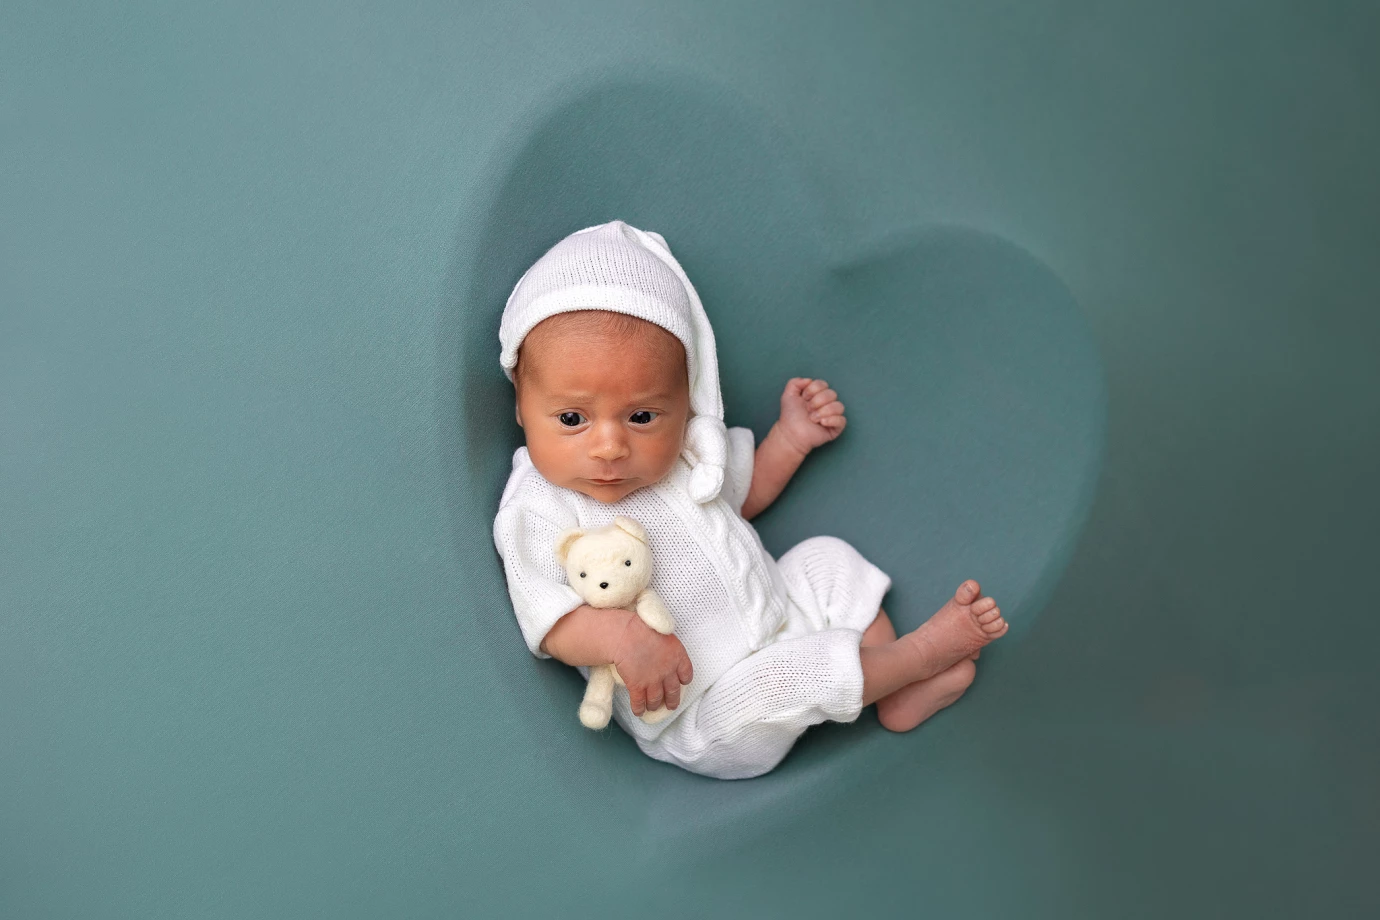 fotograf  anna-labuda portfolio zdjecia noworodkow sesje noworodkowe niemowlę